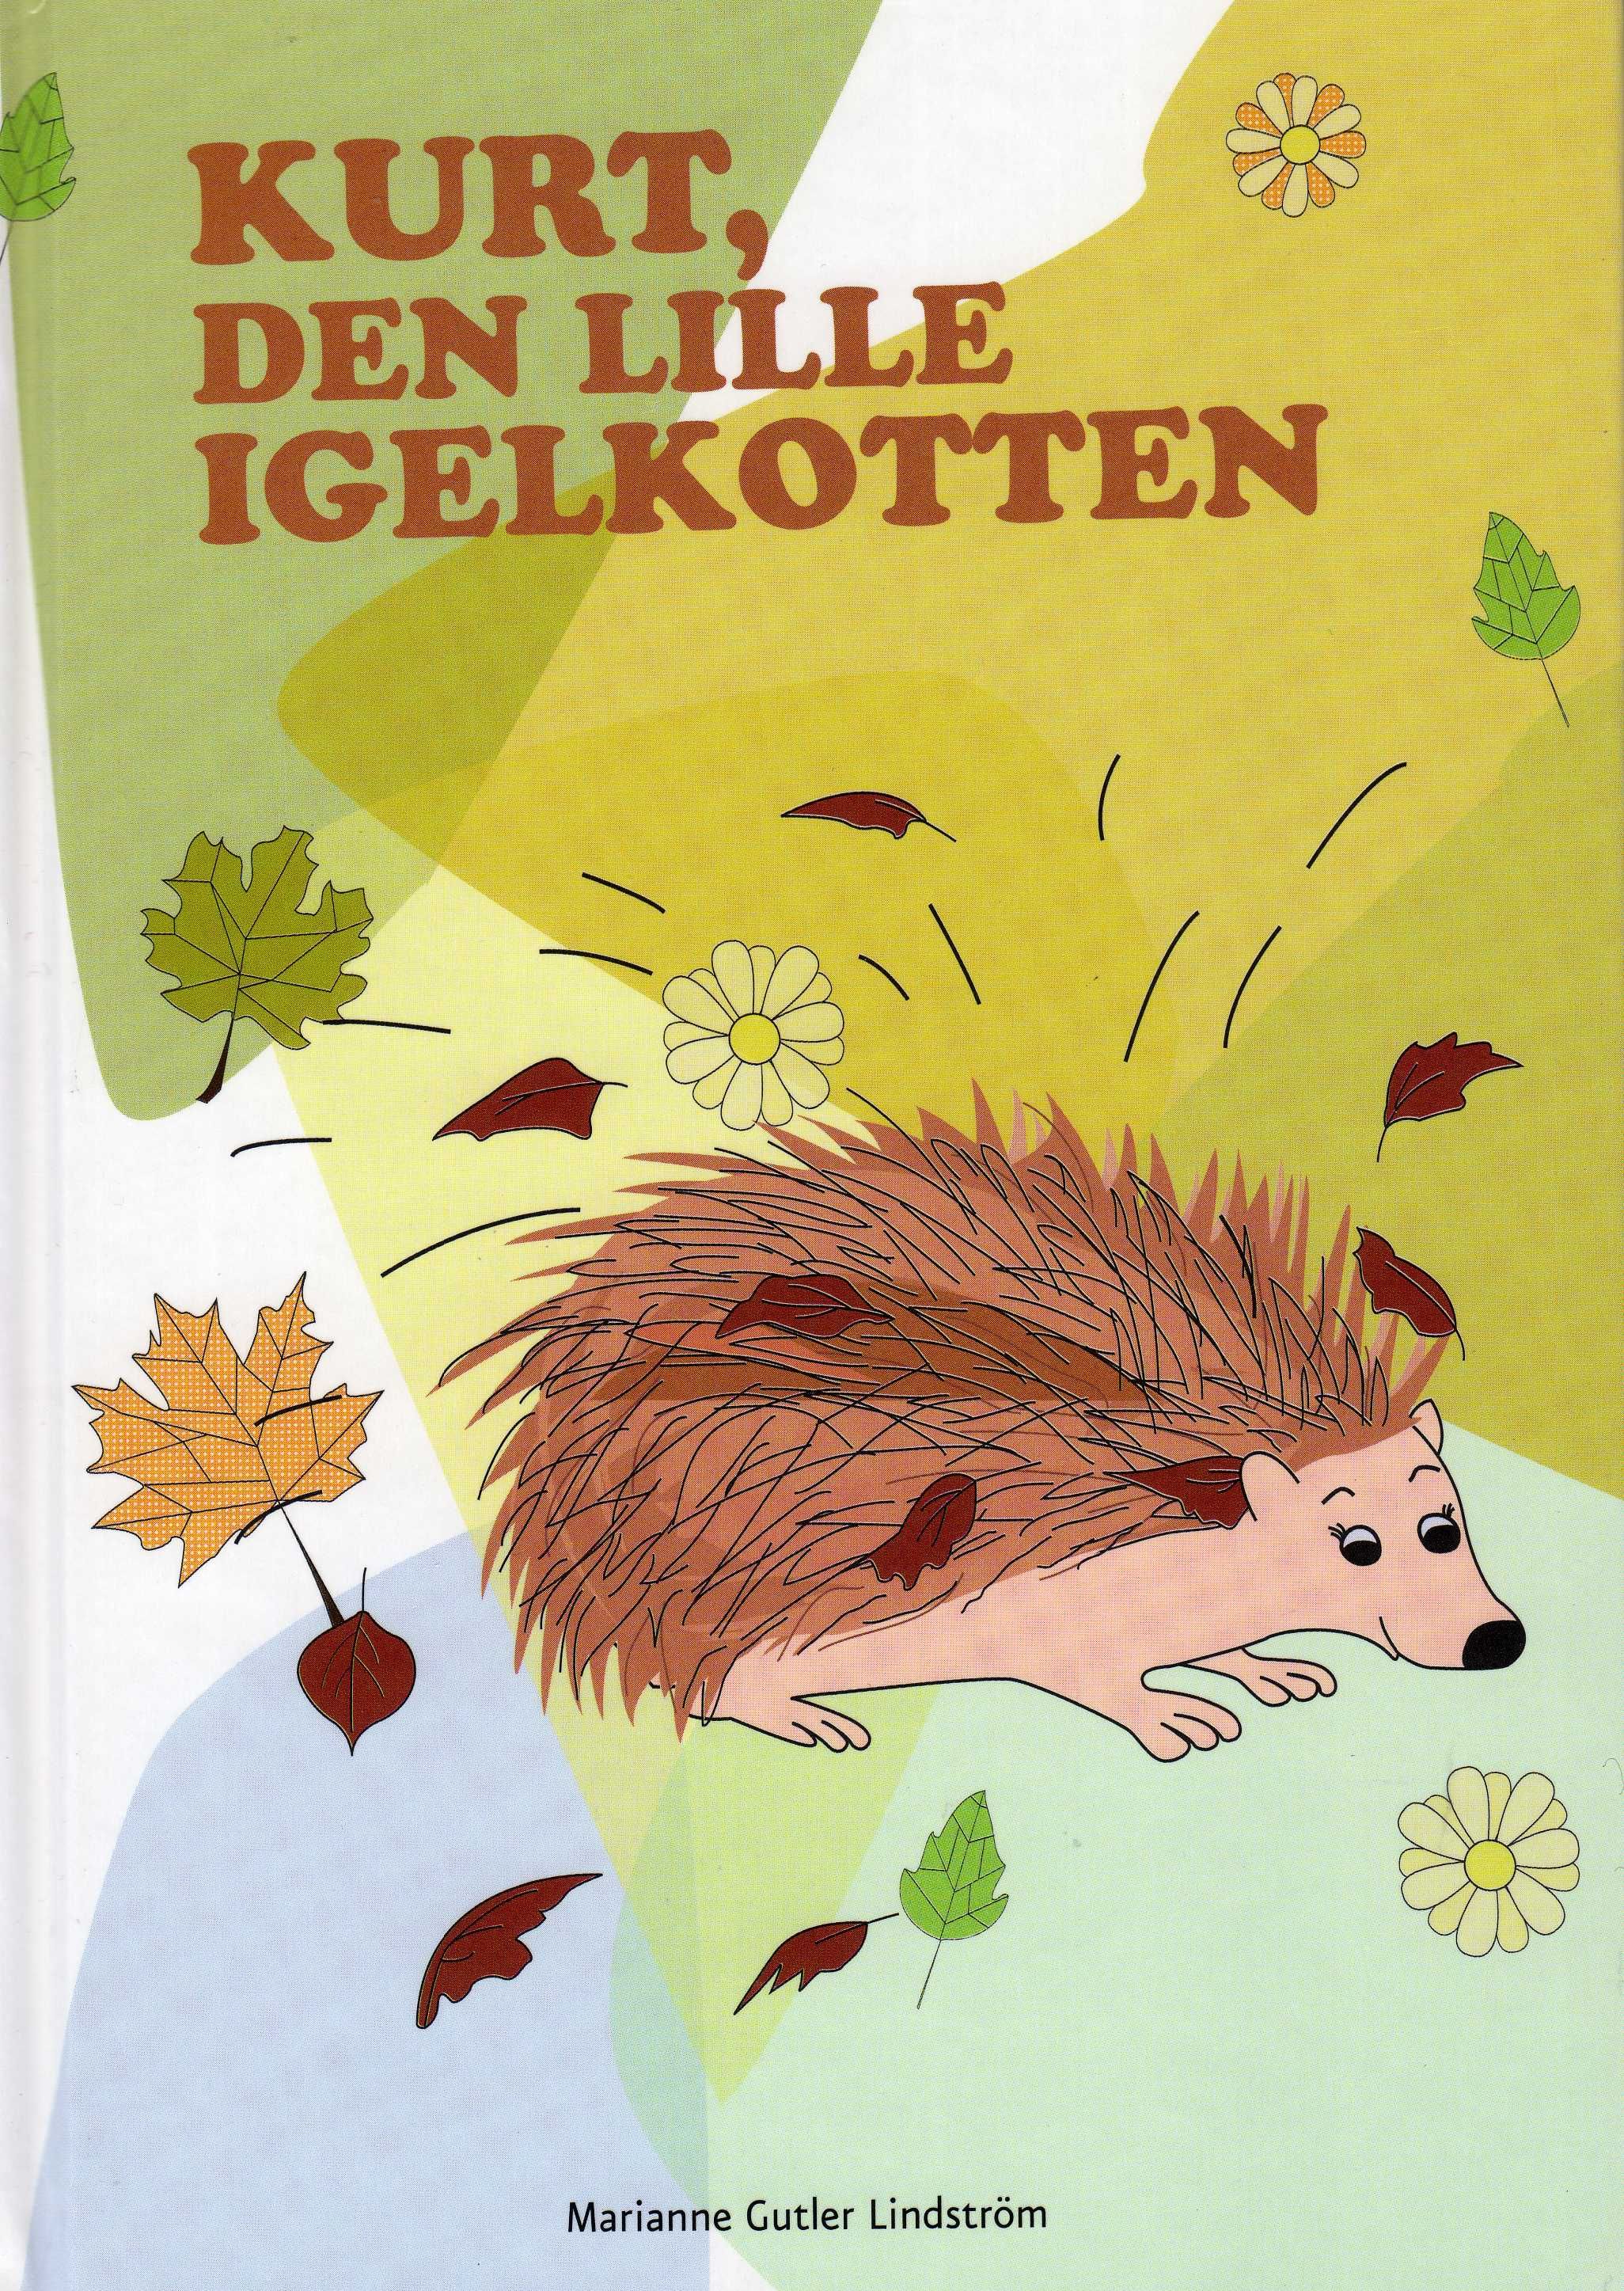 Kurt, den lille igelkotten, e-bog af Marianne Gutler Lindström